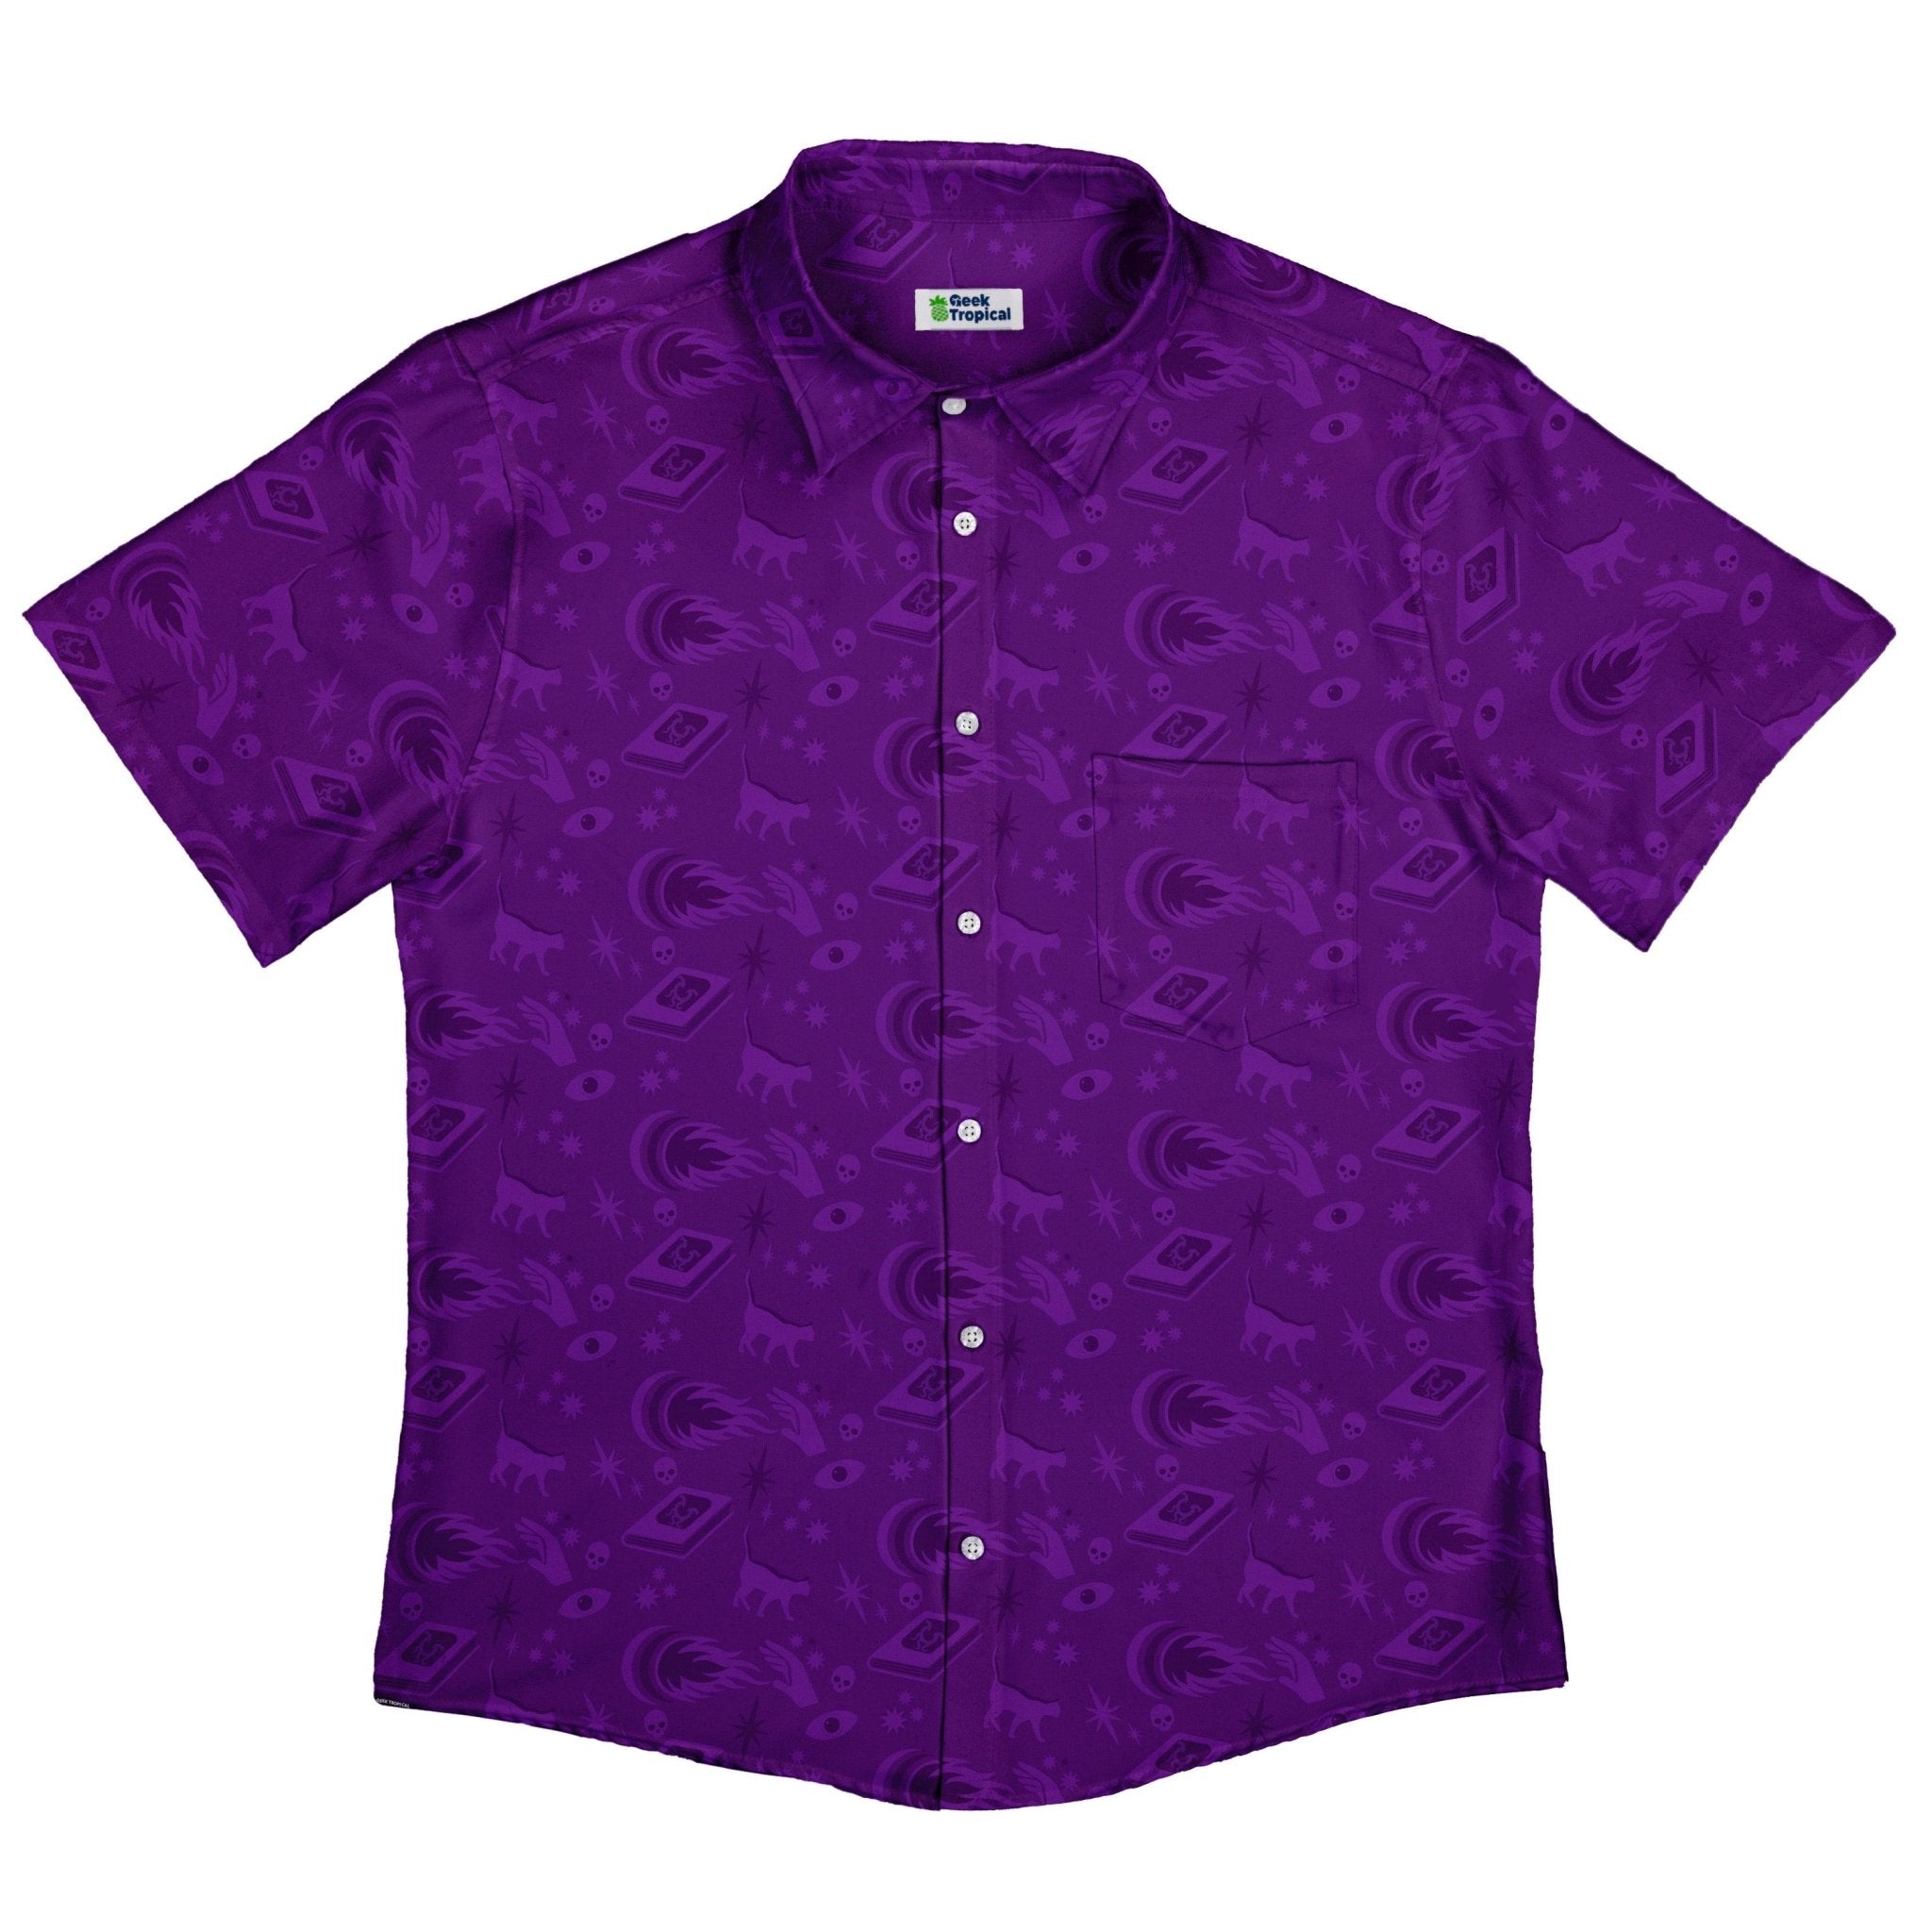 Dnd Warlock Class Button Up Shirt - adult sizing - Design by Heather Davenport - dnd & rpg print